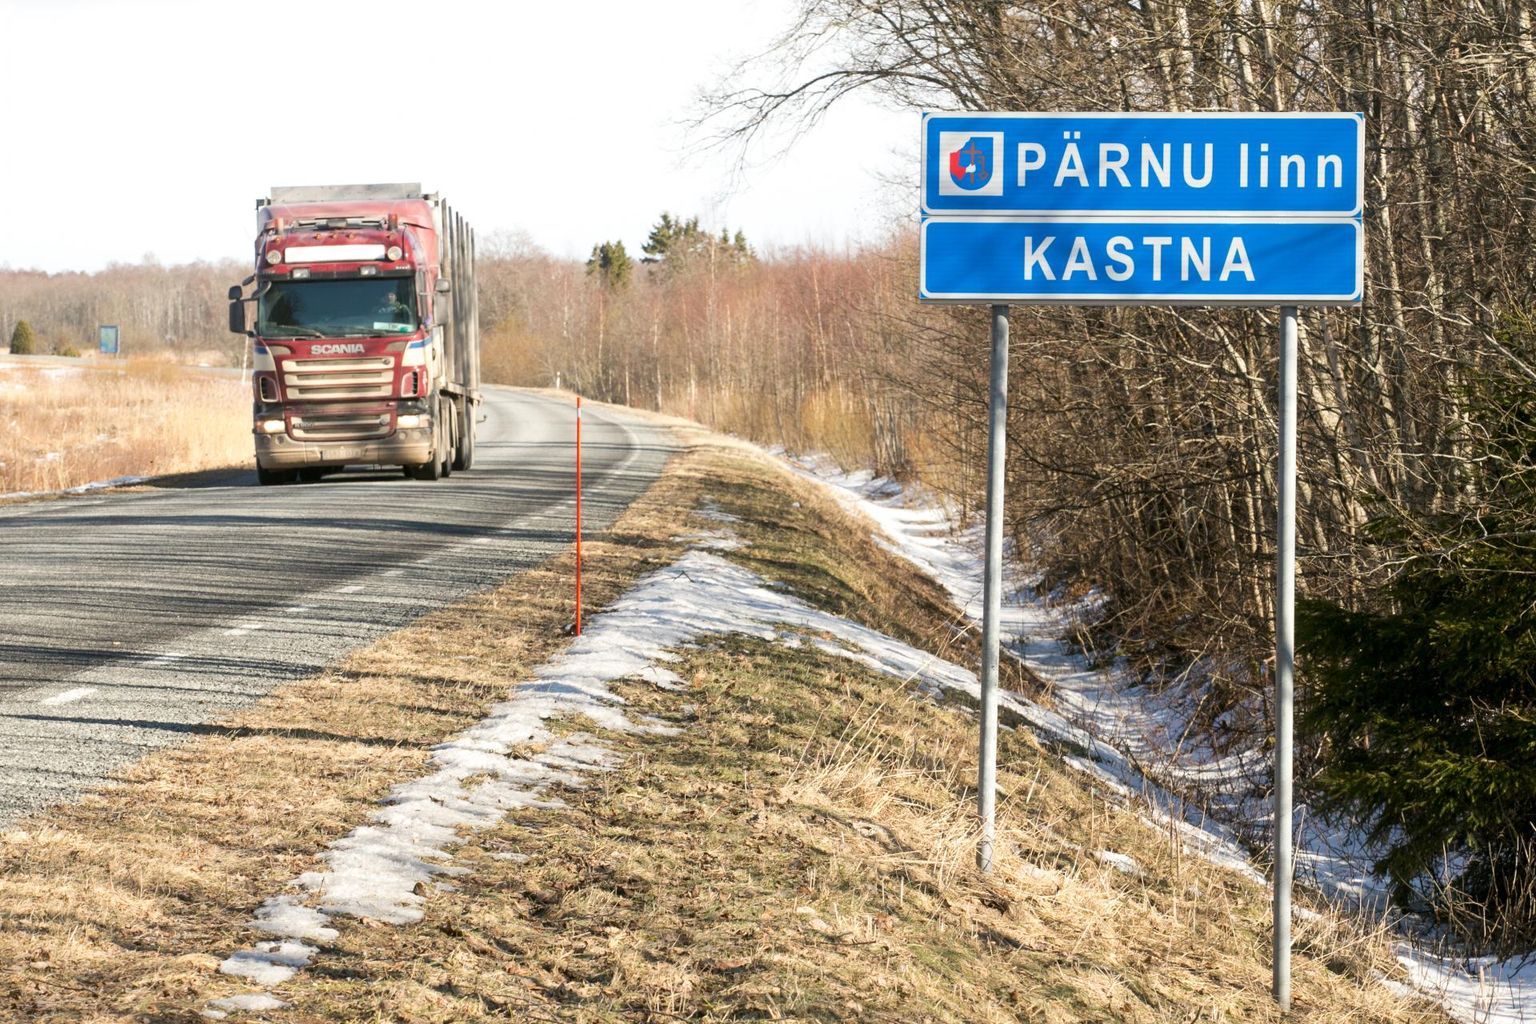 Haldusreformi käigus moodustatud omavalitsuse pindala on 858 ruutkilomeetrit ja sellega on Pärnu pindalalt suurim linn Eestis.